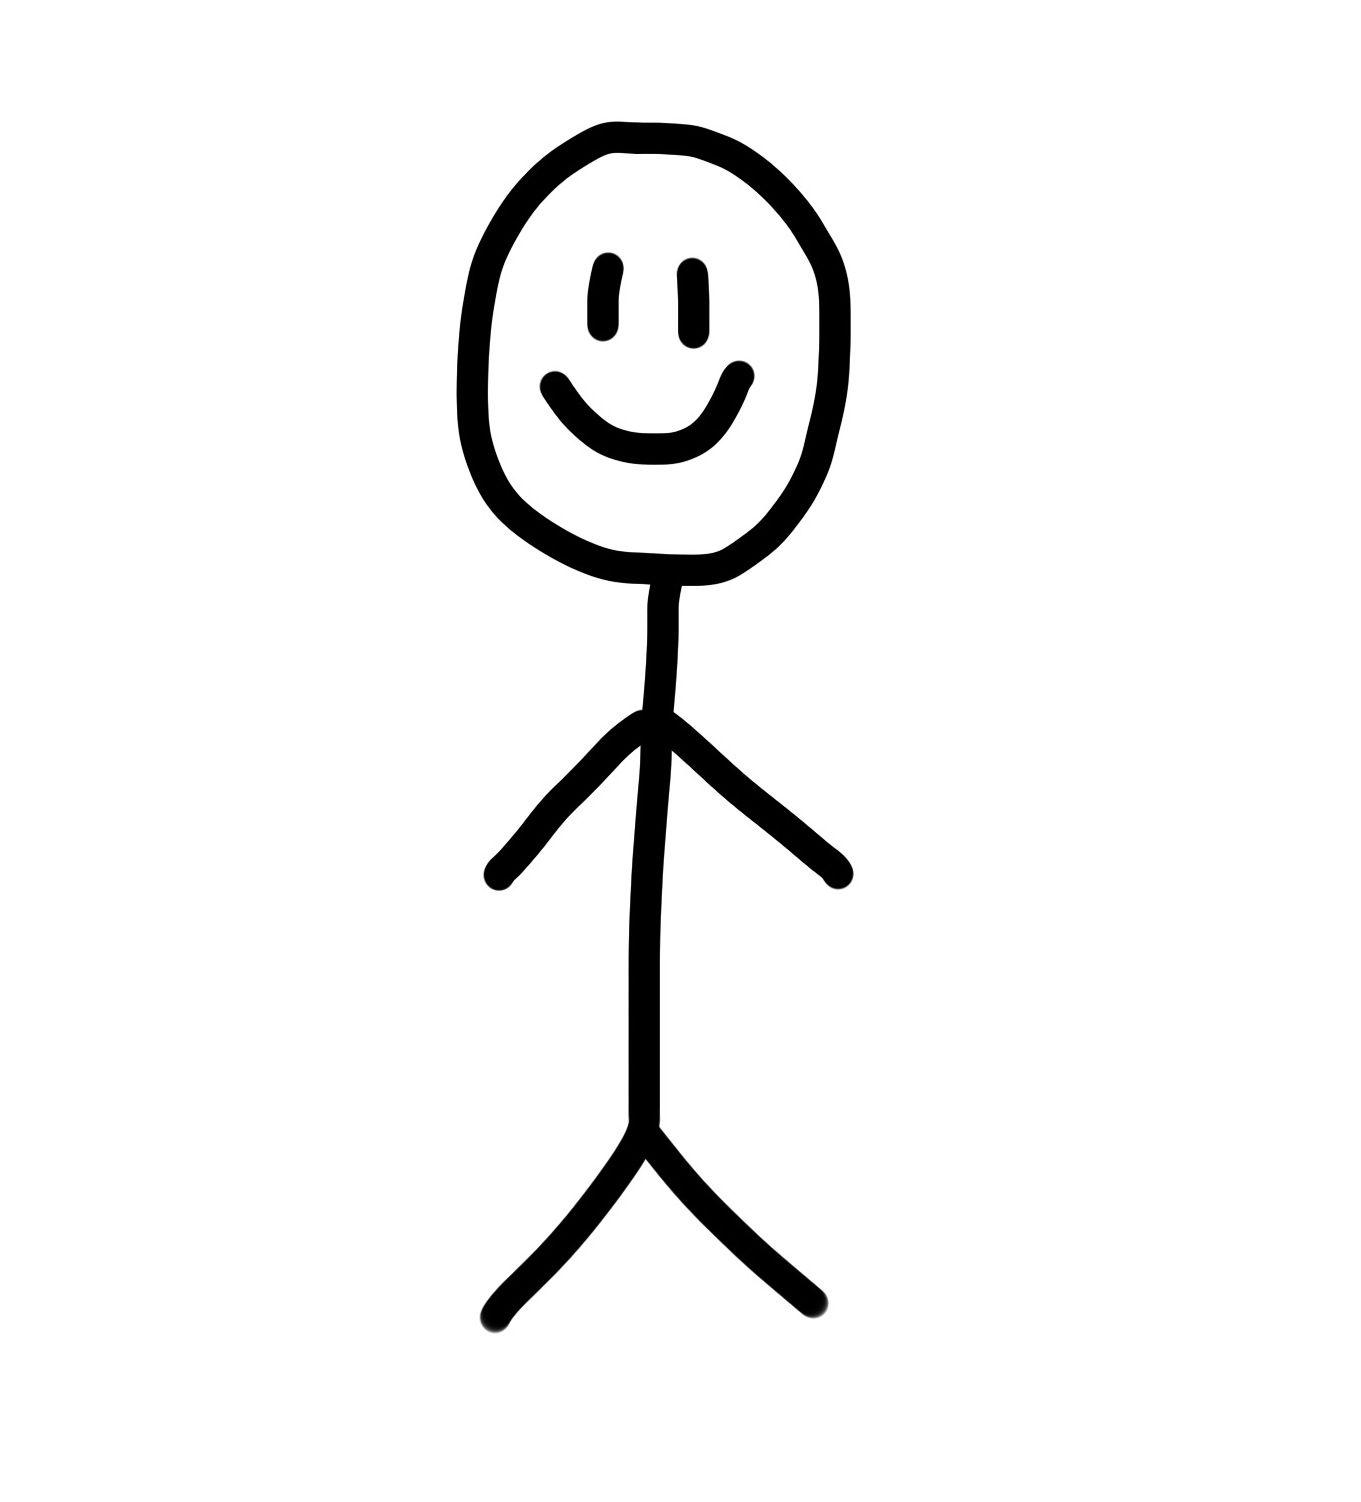 Stick Figure Logo - Contest - $35 Simple Stick Figure logo/image